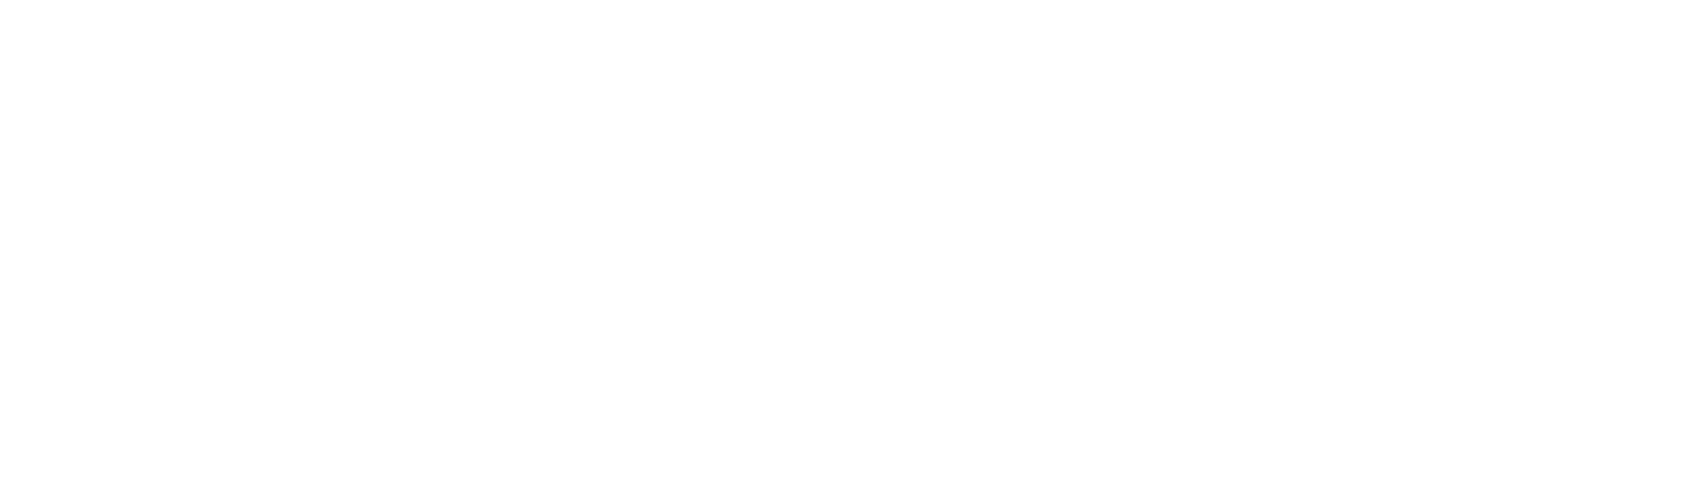 4SaleByOwner logo